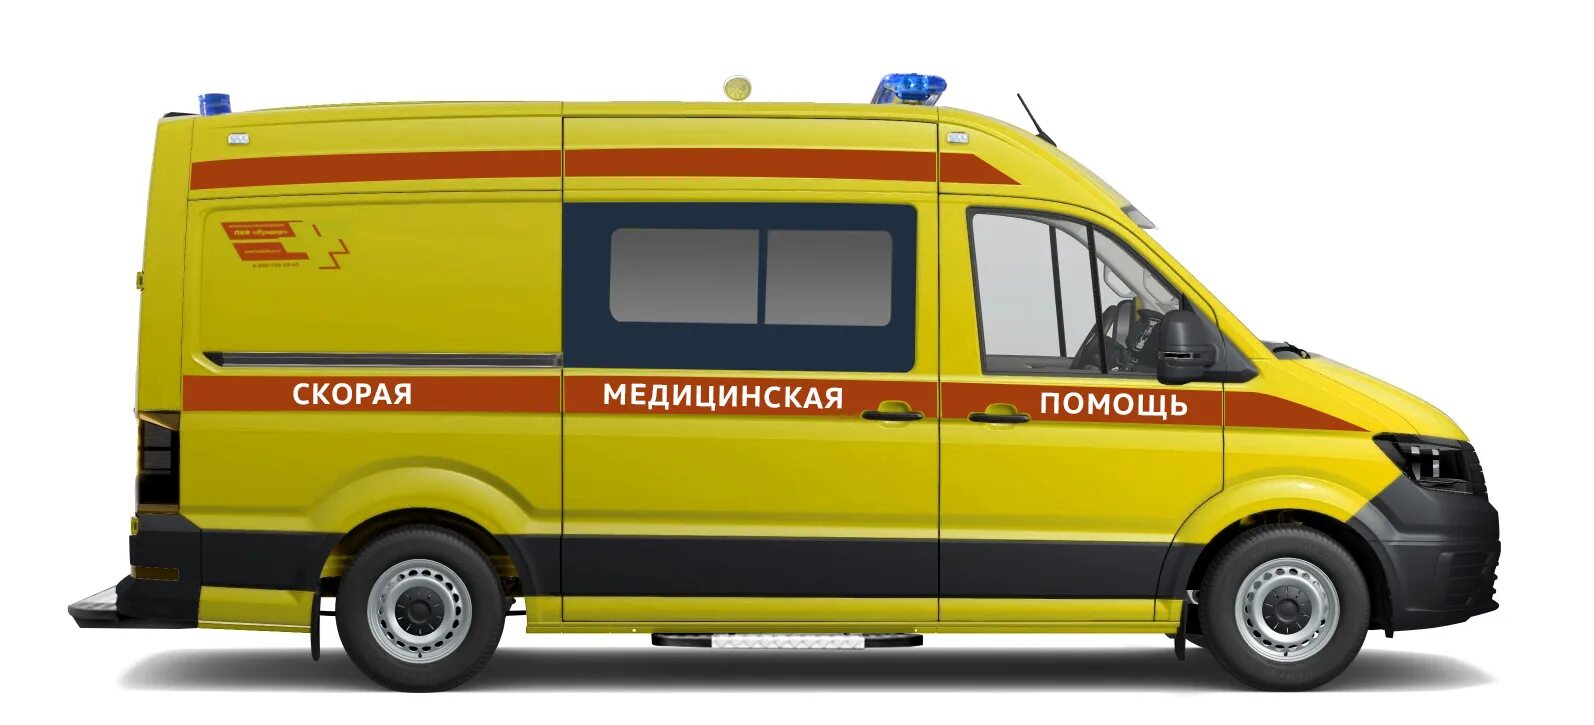 Желтая машина скорой помощи. Луидор 2250b0 АСМП 2021. Автомобиль скорой медицинской помощи Луидор-2250в0. Луидор 2250b0 АСМП 2019. Volkswagen Crafter инкассация.